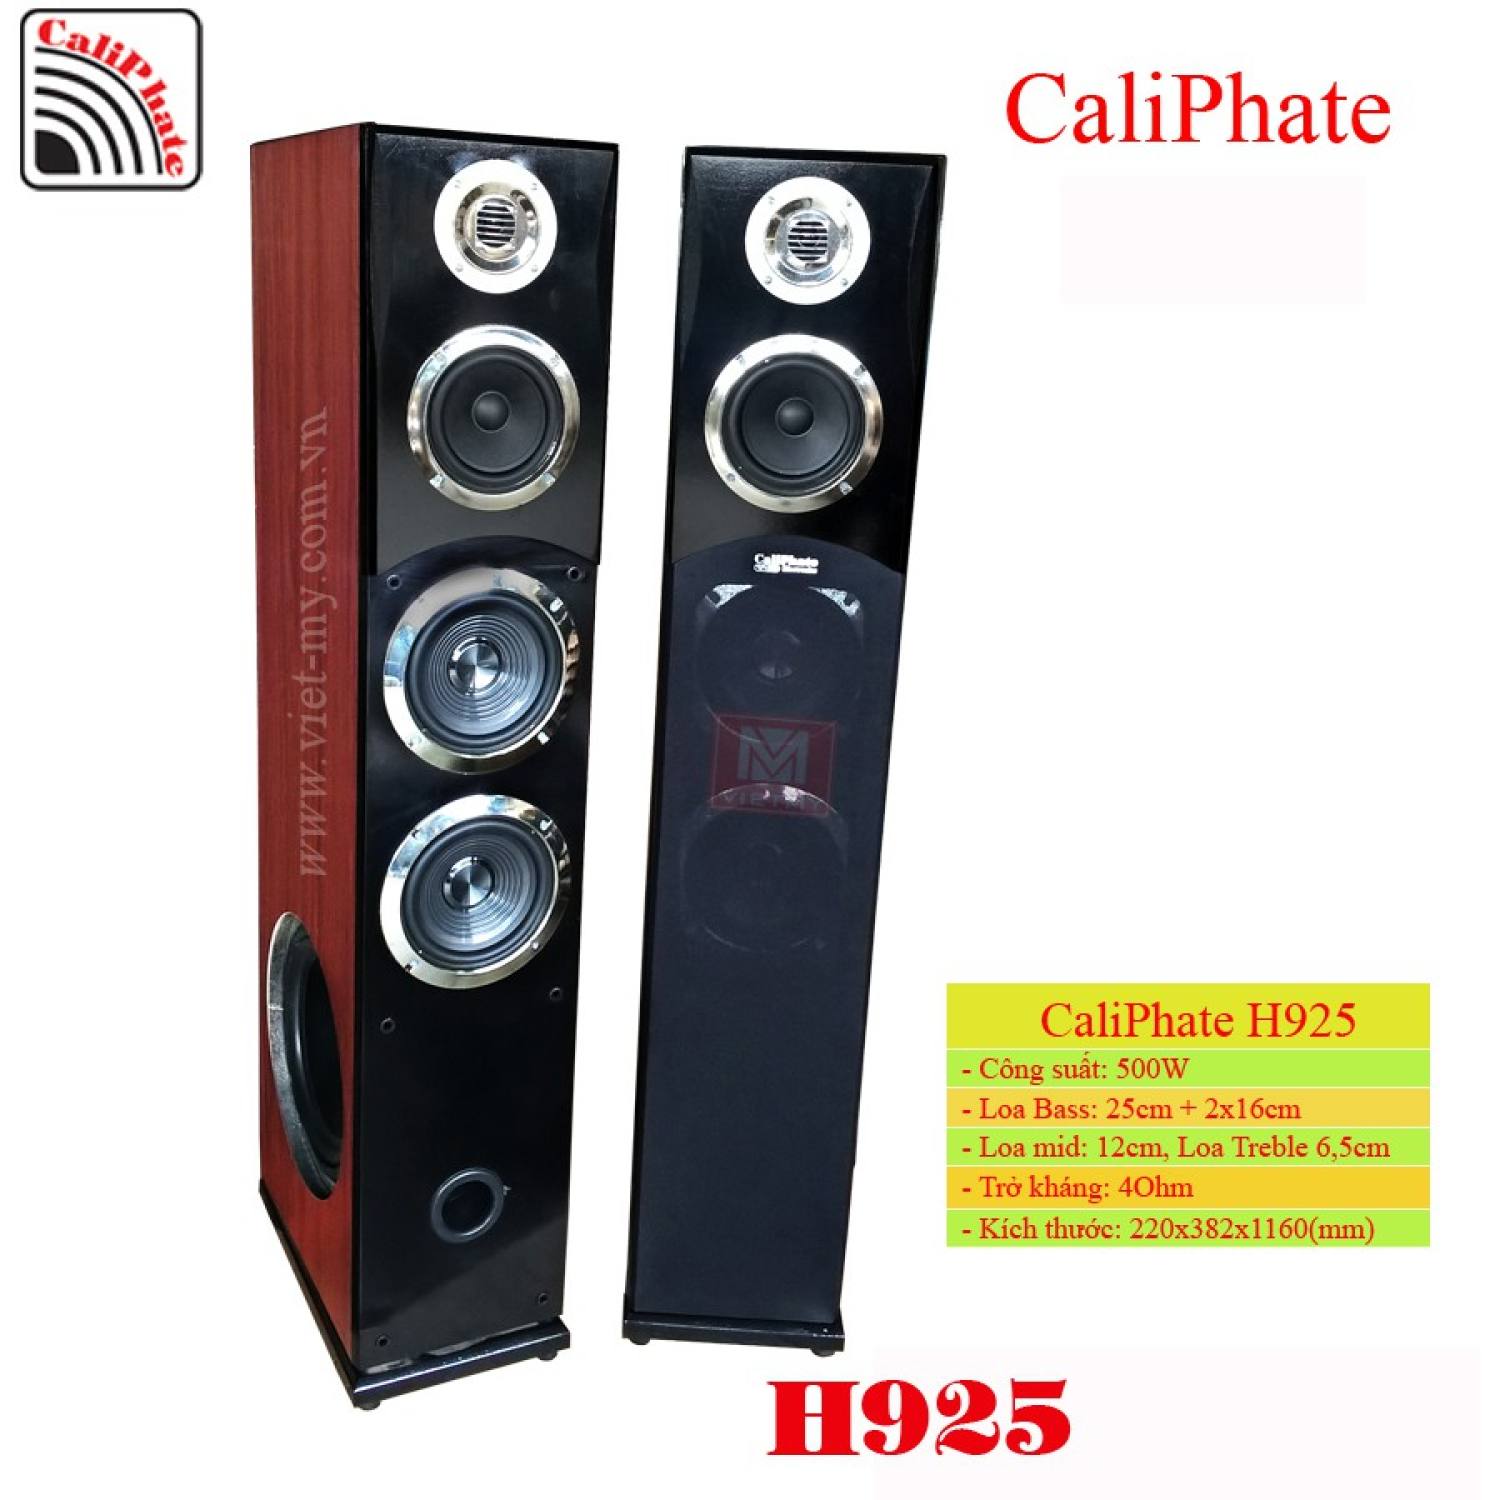 Loa cây karaoke CaliPhate H925 - 5 loa: 1 Bass 25P100 hông, 2 bass 16P70 mặt, 1 trυng 12, 1 tép (1 đôi)